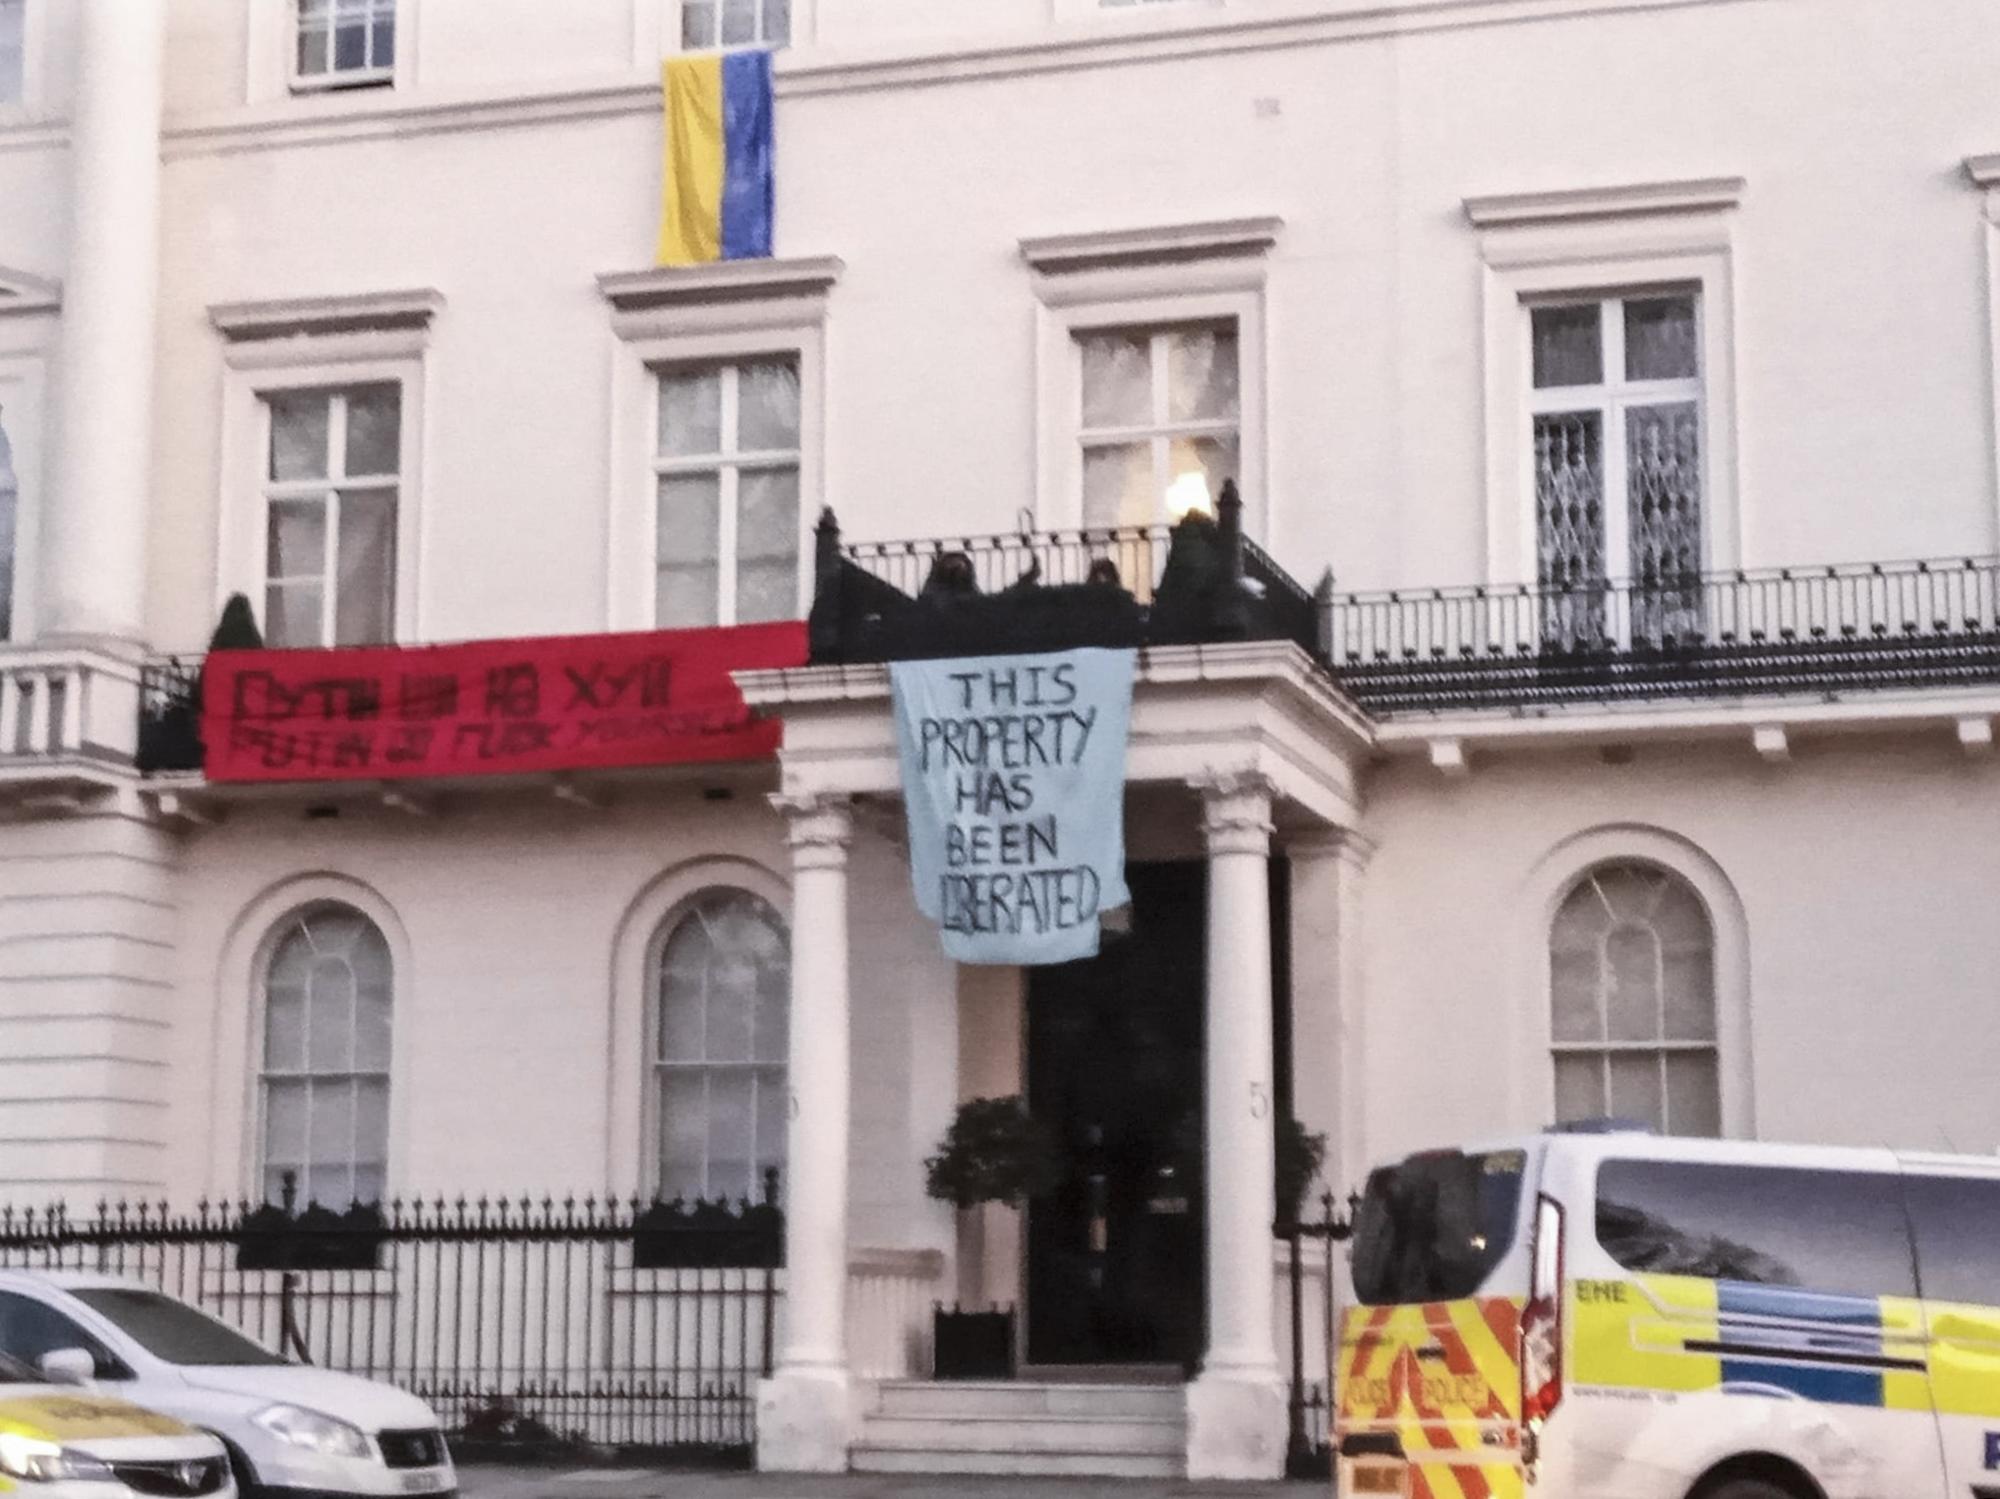 Un grupo anarquista ha ocupado en Londres la mansión del oligarca ruso Oleg Deripaska